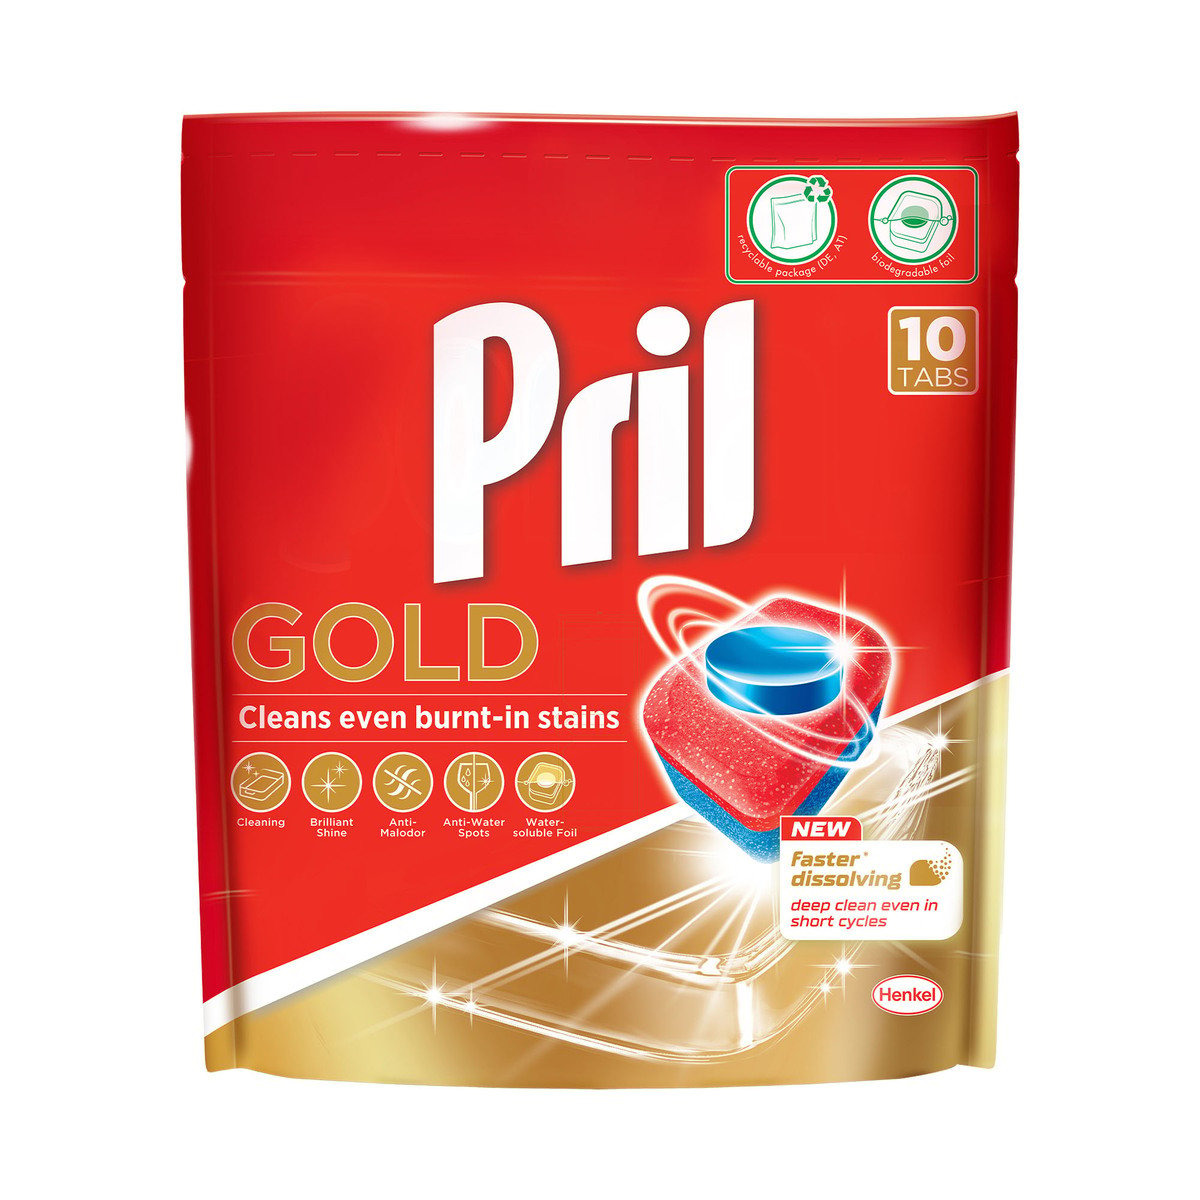 Pril Gold Dishwashing Tabs 10 pcs 192 g